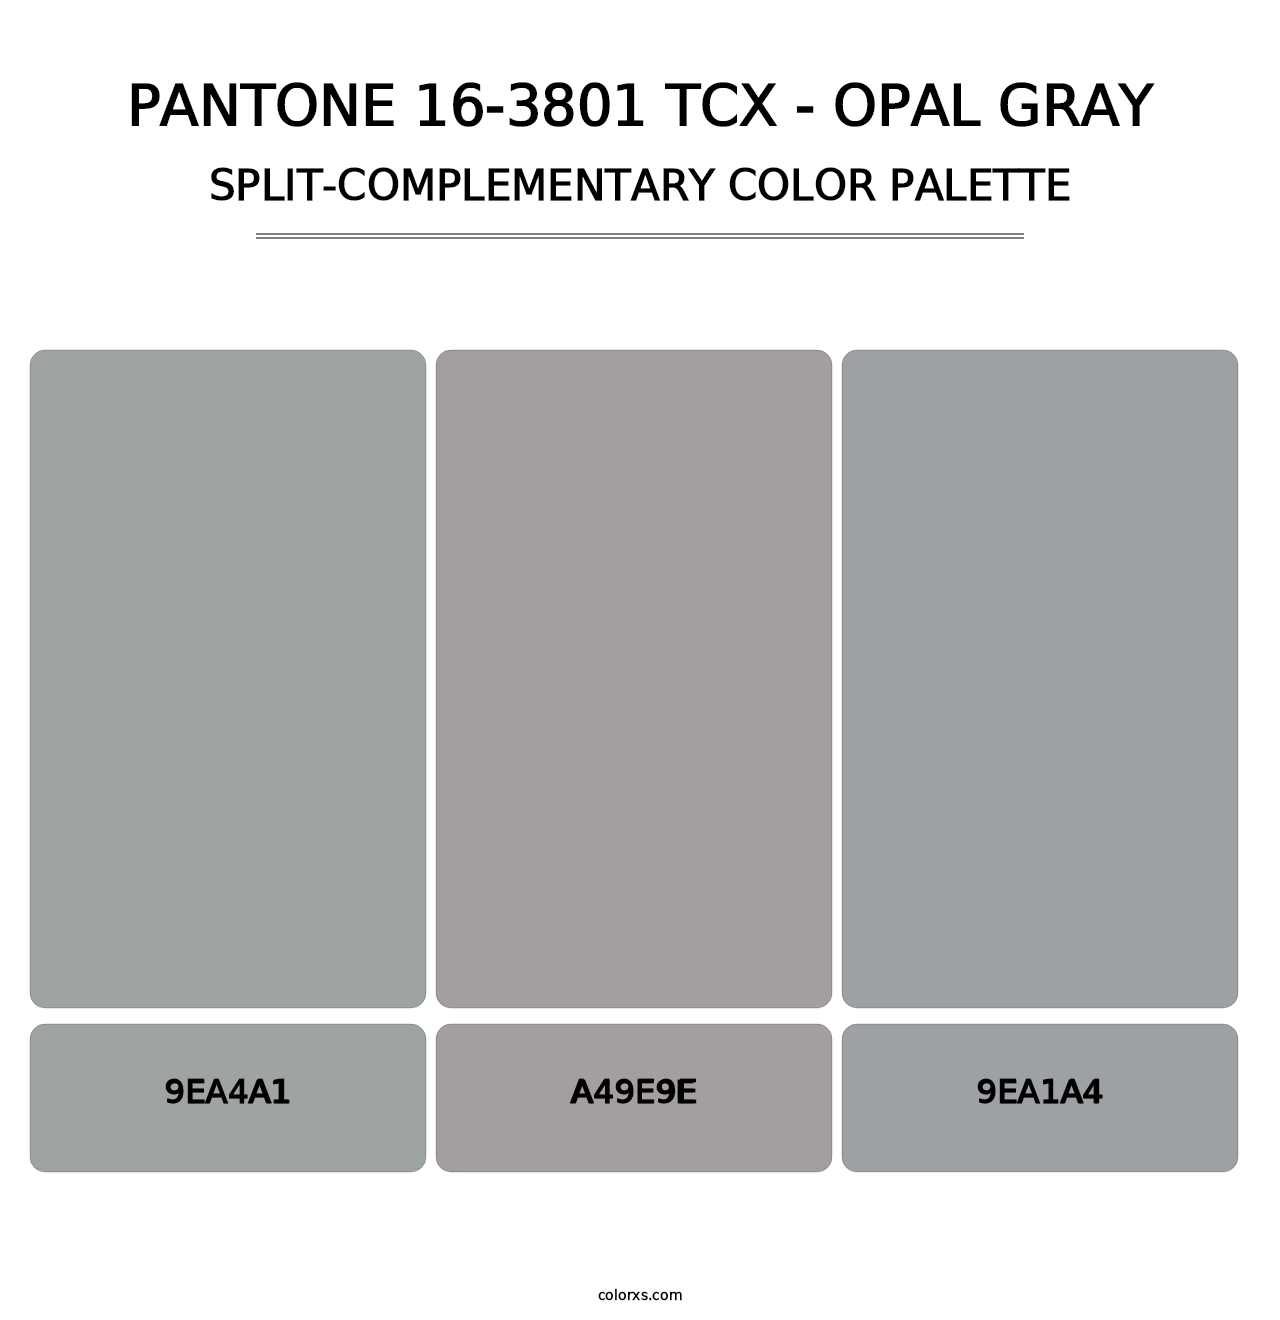 PANTONE 16-3801 TCX - Opal Gray - Split-Complementary Color Palette